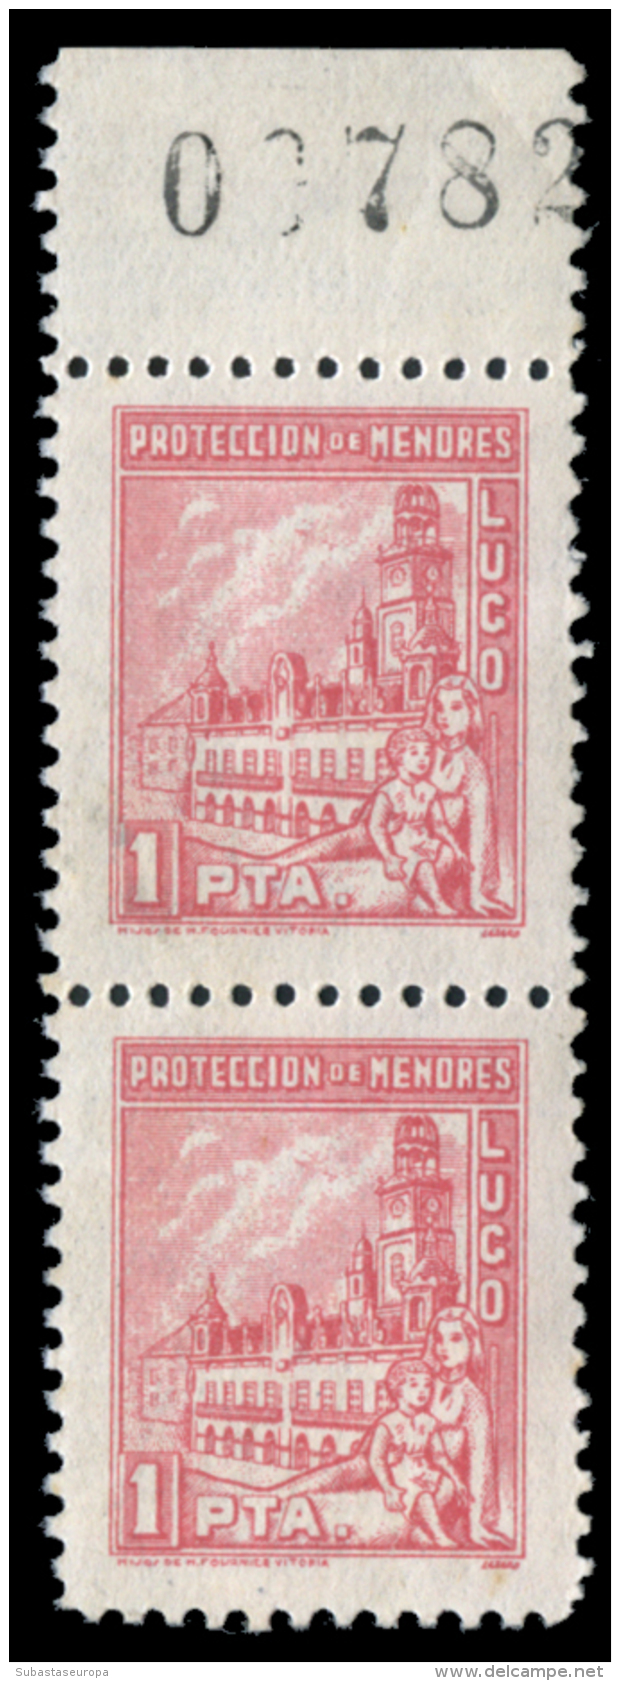 LIUGO. Protección De Menores. 50 Cts. Y 1 Pta. Parejas Verticales. Sofima 38/39. Peso= 15 Gramos. - Spanish Civil War Labels